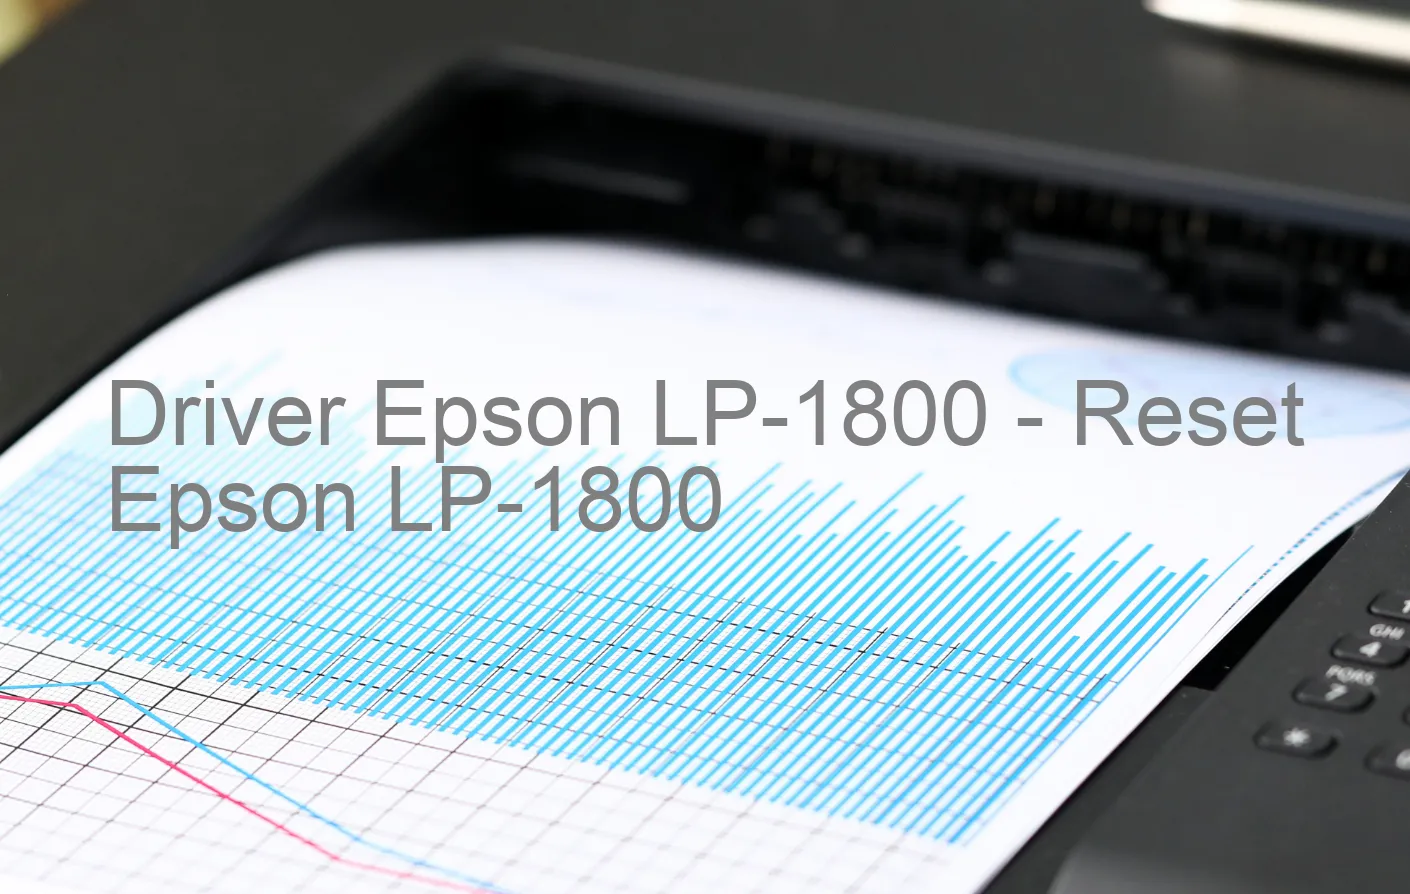 Epson LP-1800のドライバー、Epson LP-1800のリセットソフトウェア